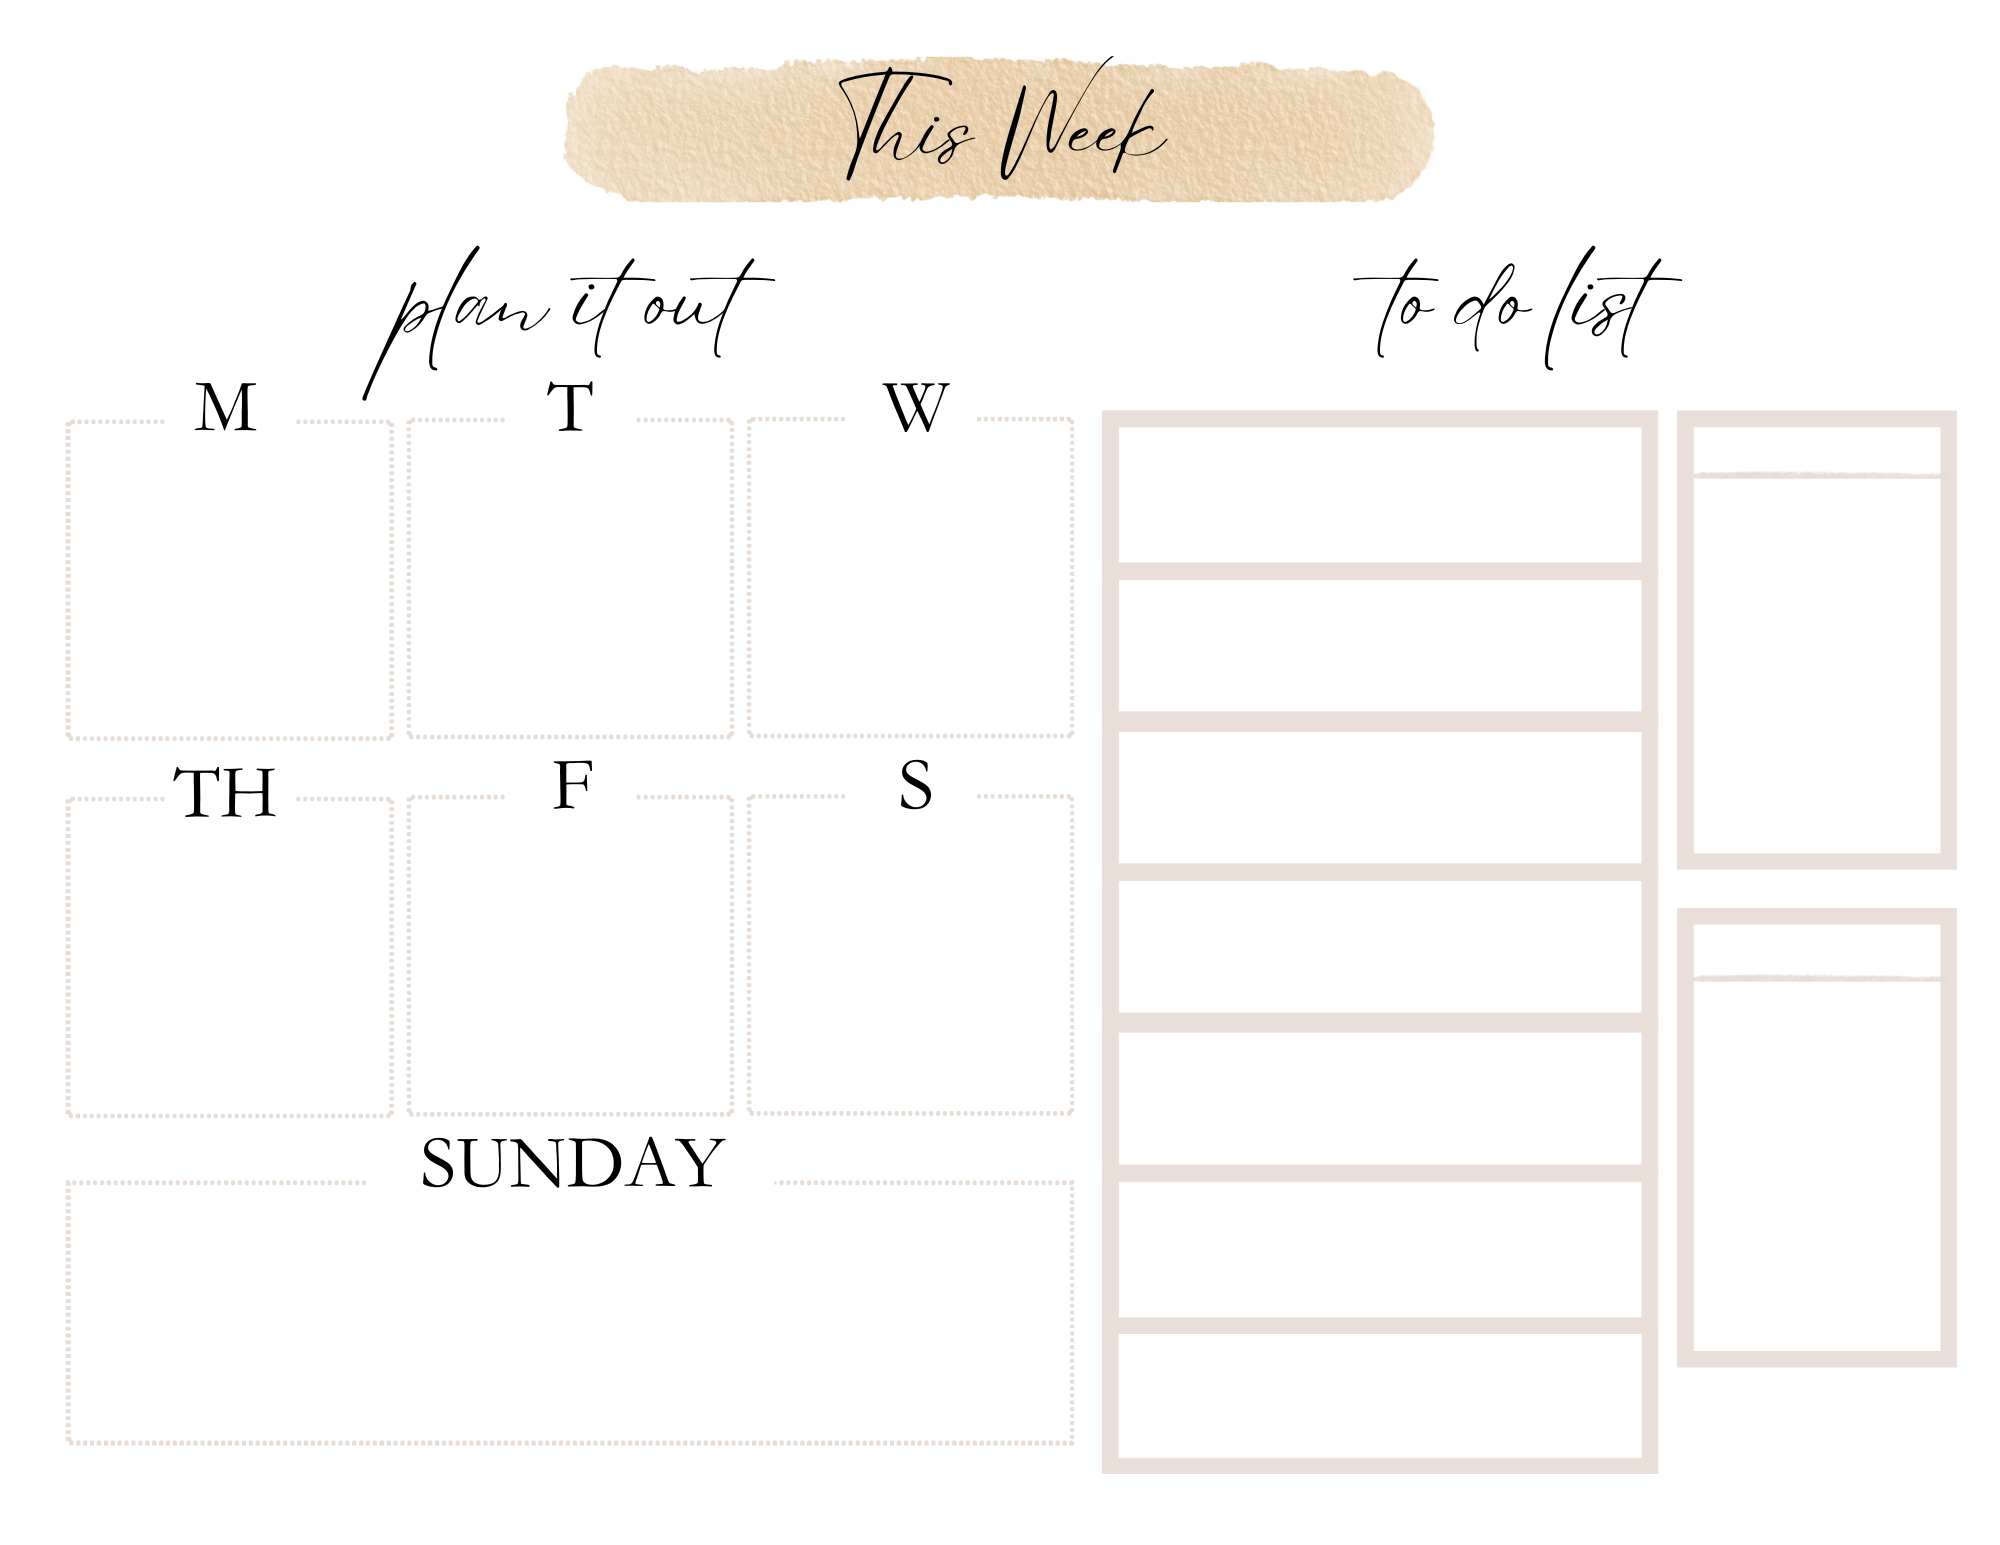 Free Printable Weekly Planner